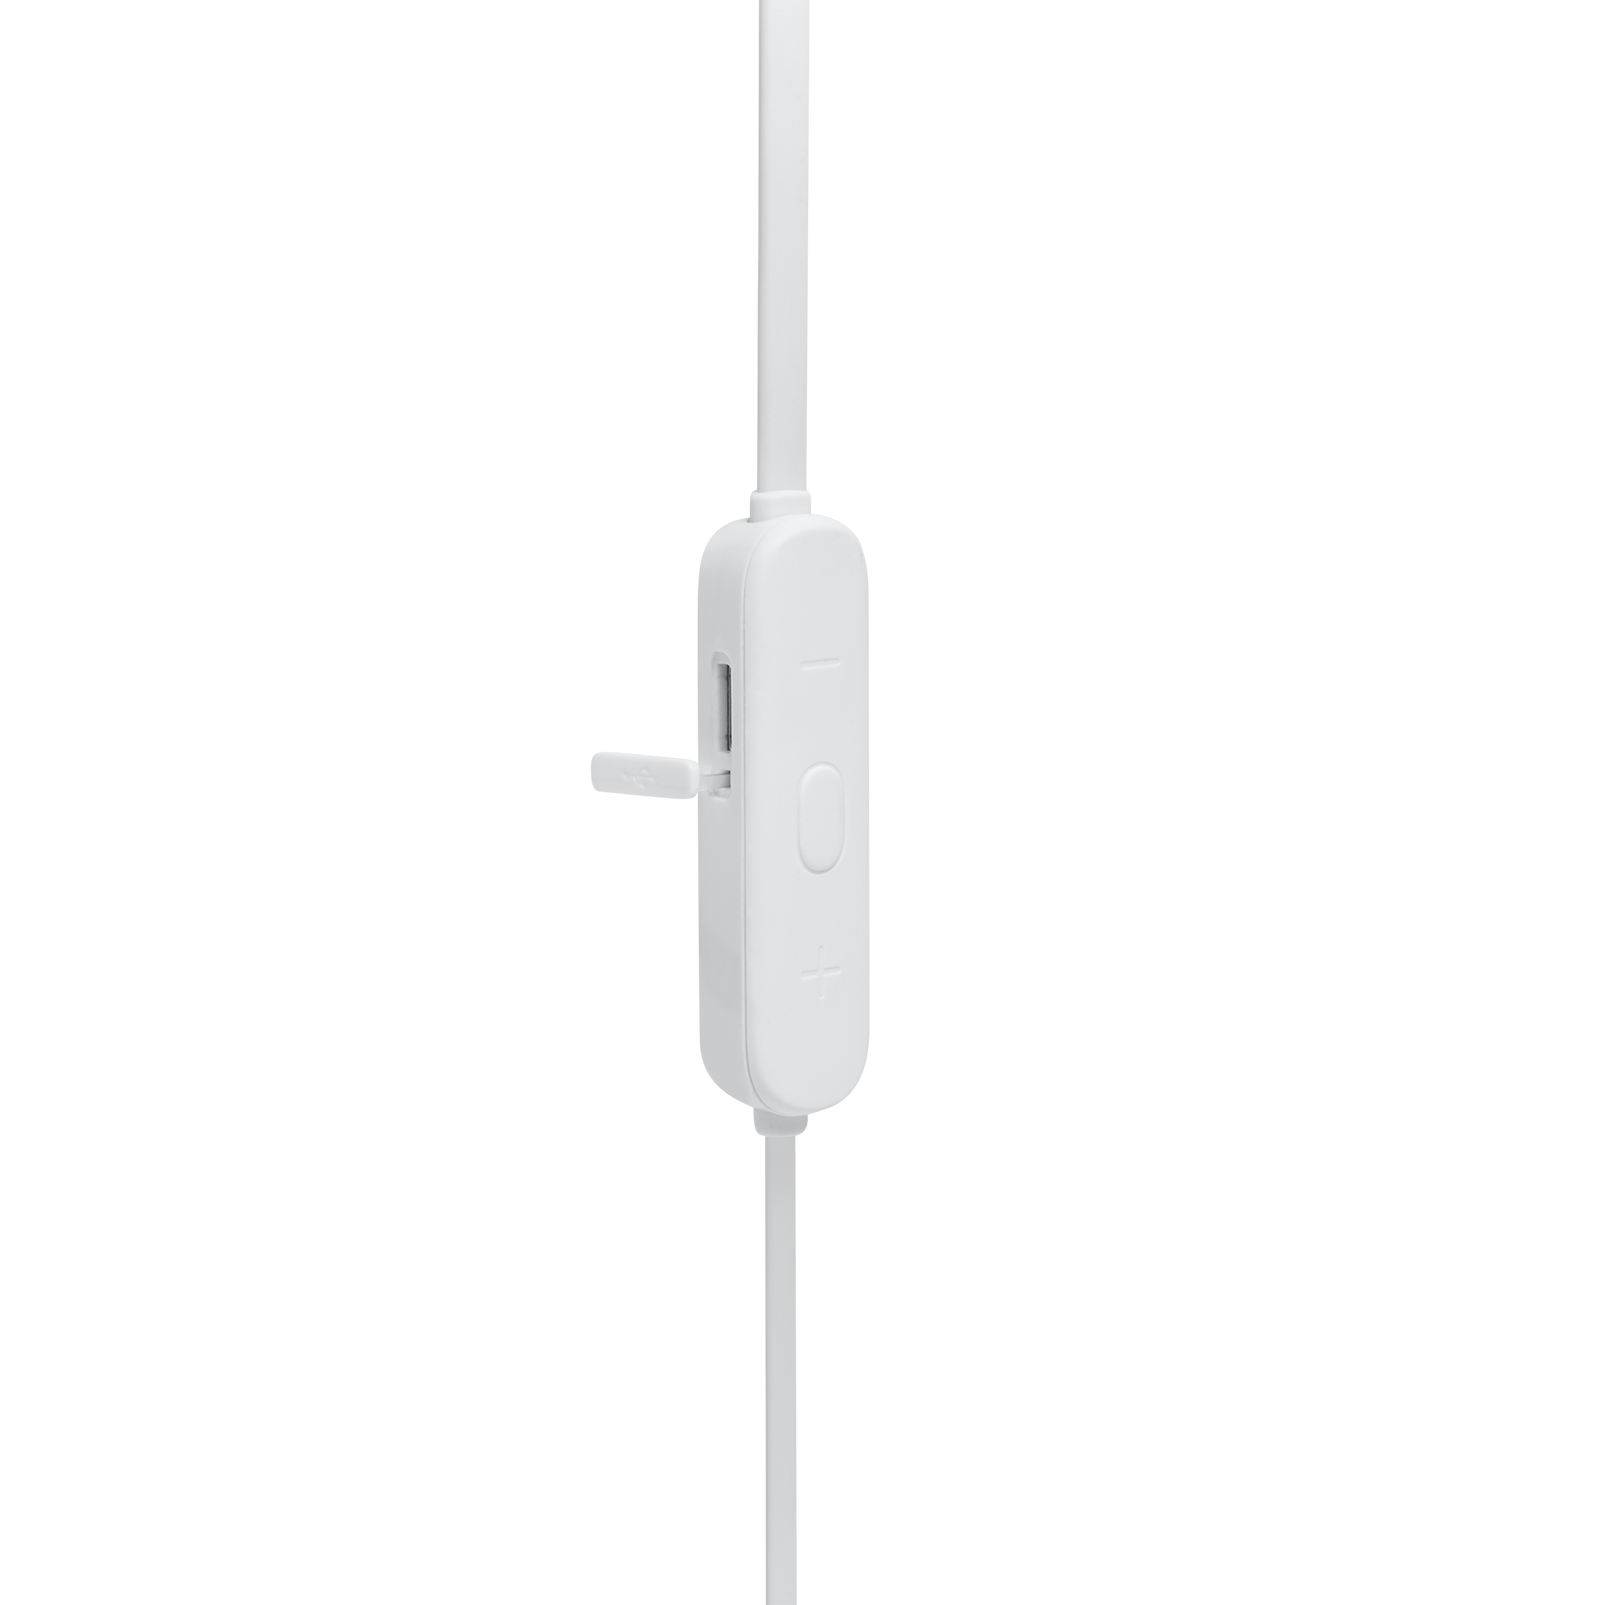 JBL Tune 165BT - White - Wireless In-Ear headphones - Detailshot 3